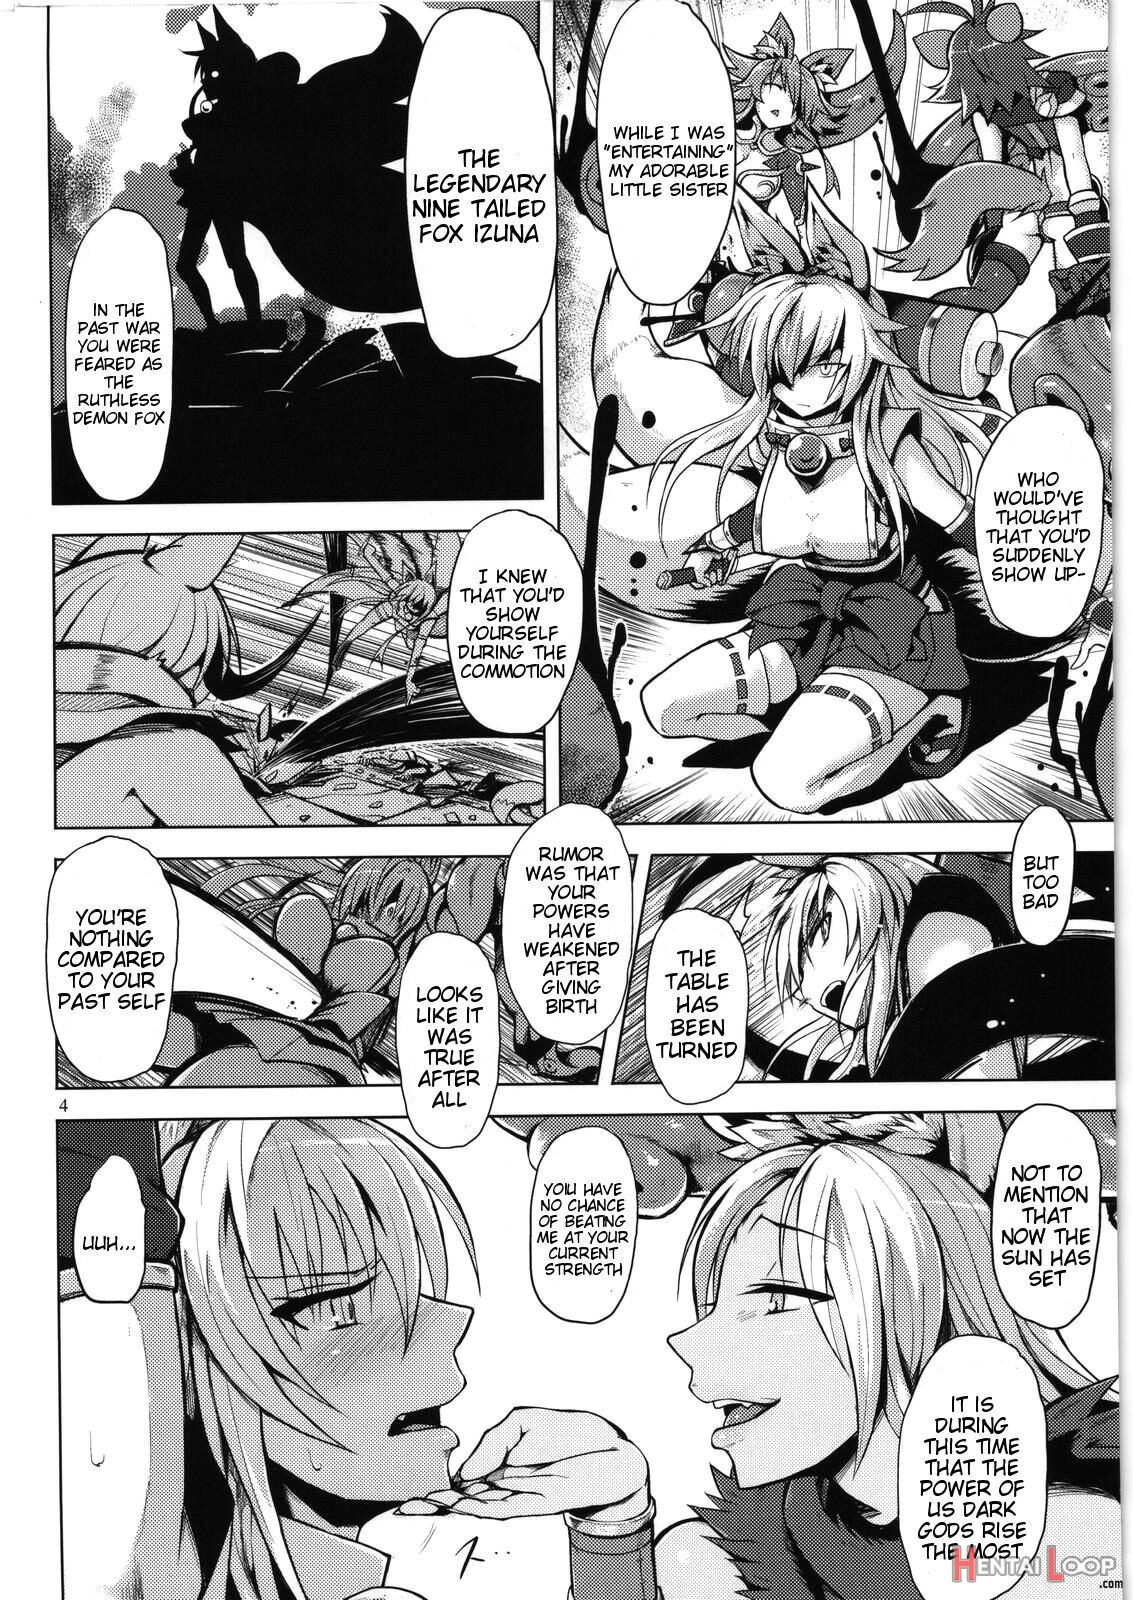 Izuna Rape page 3